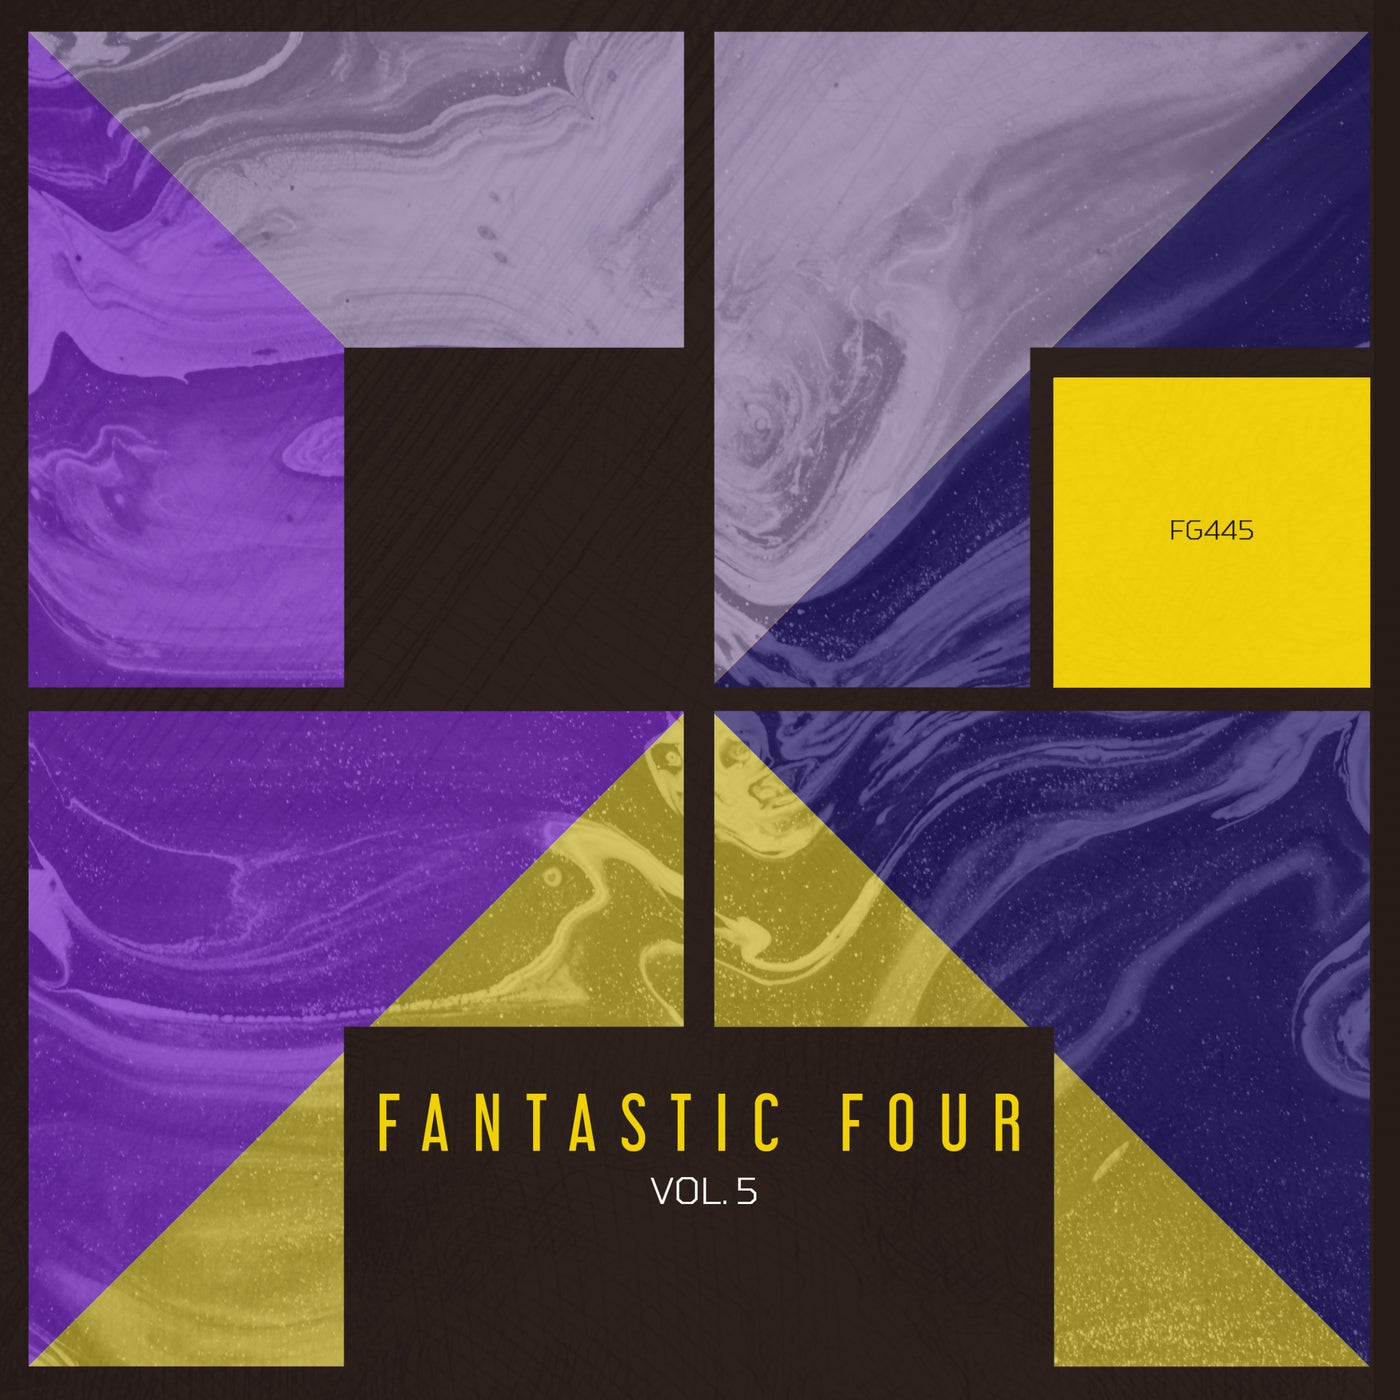 VA – Fantastic Four, Vol. 5 [FG445]